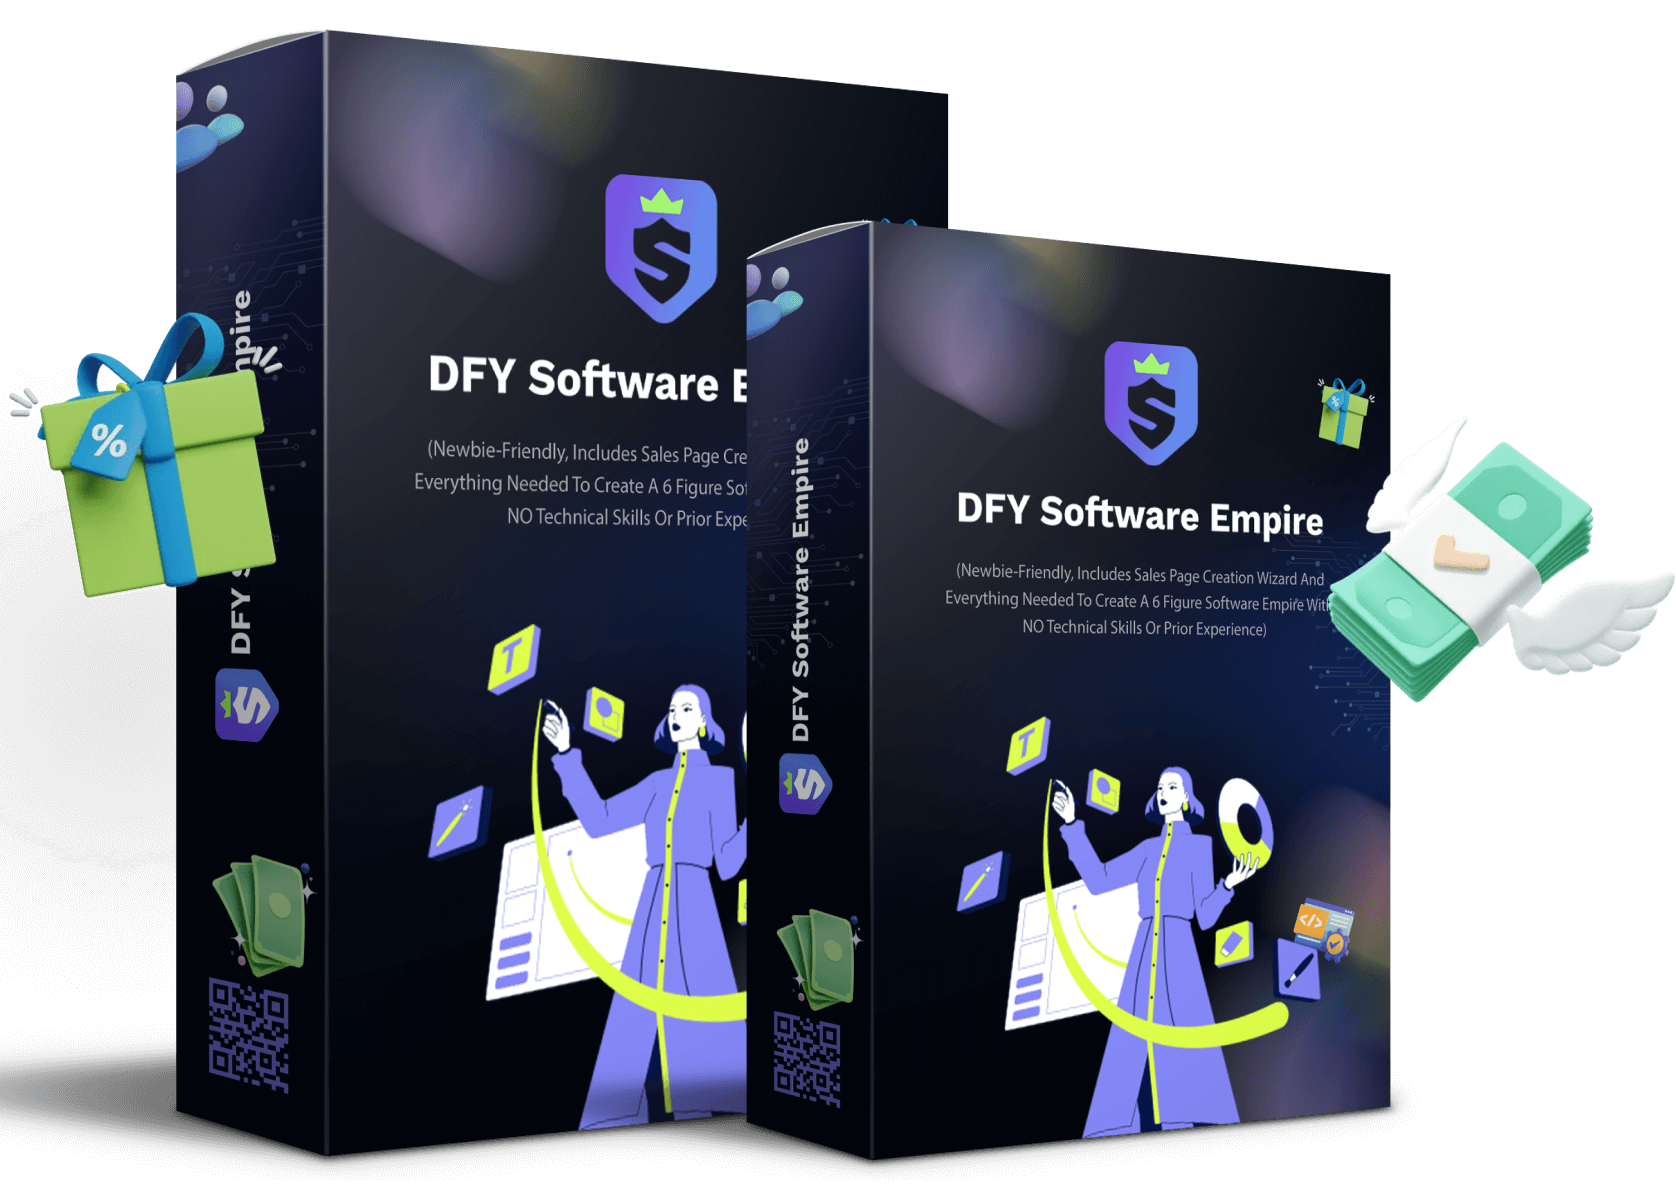 DFY Software Empire